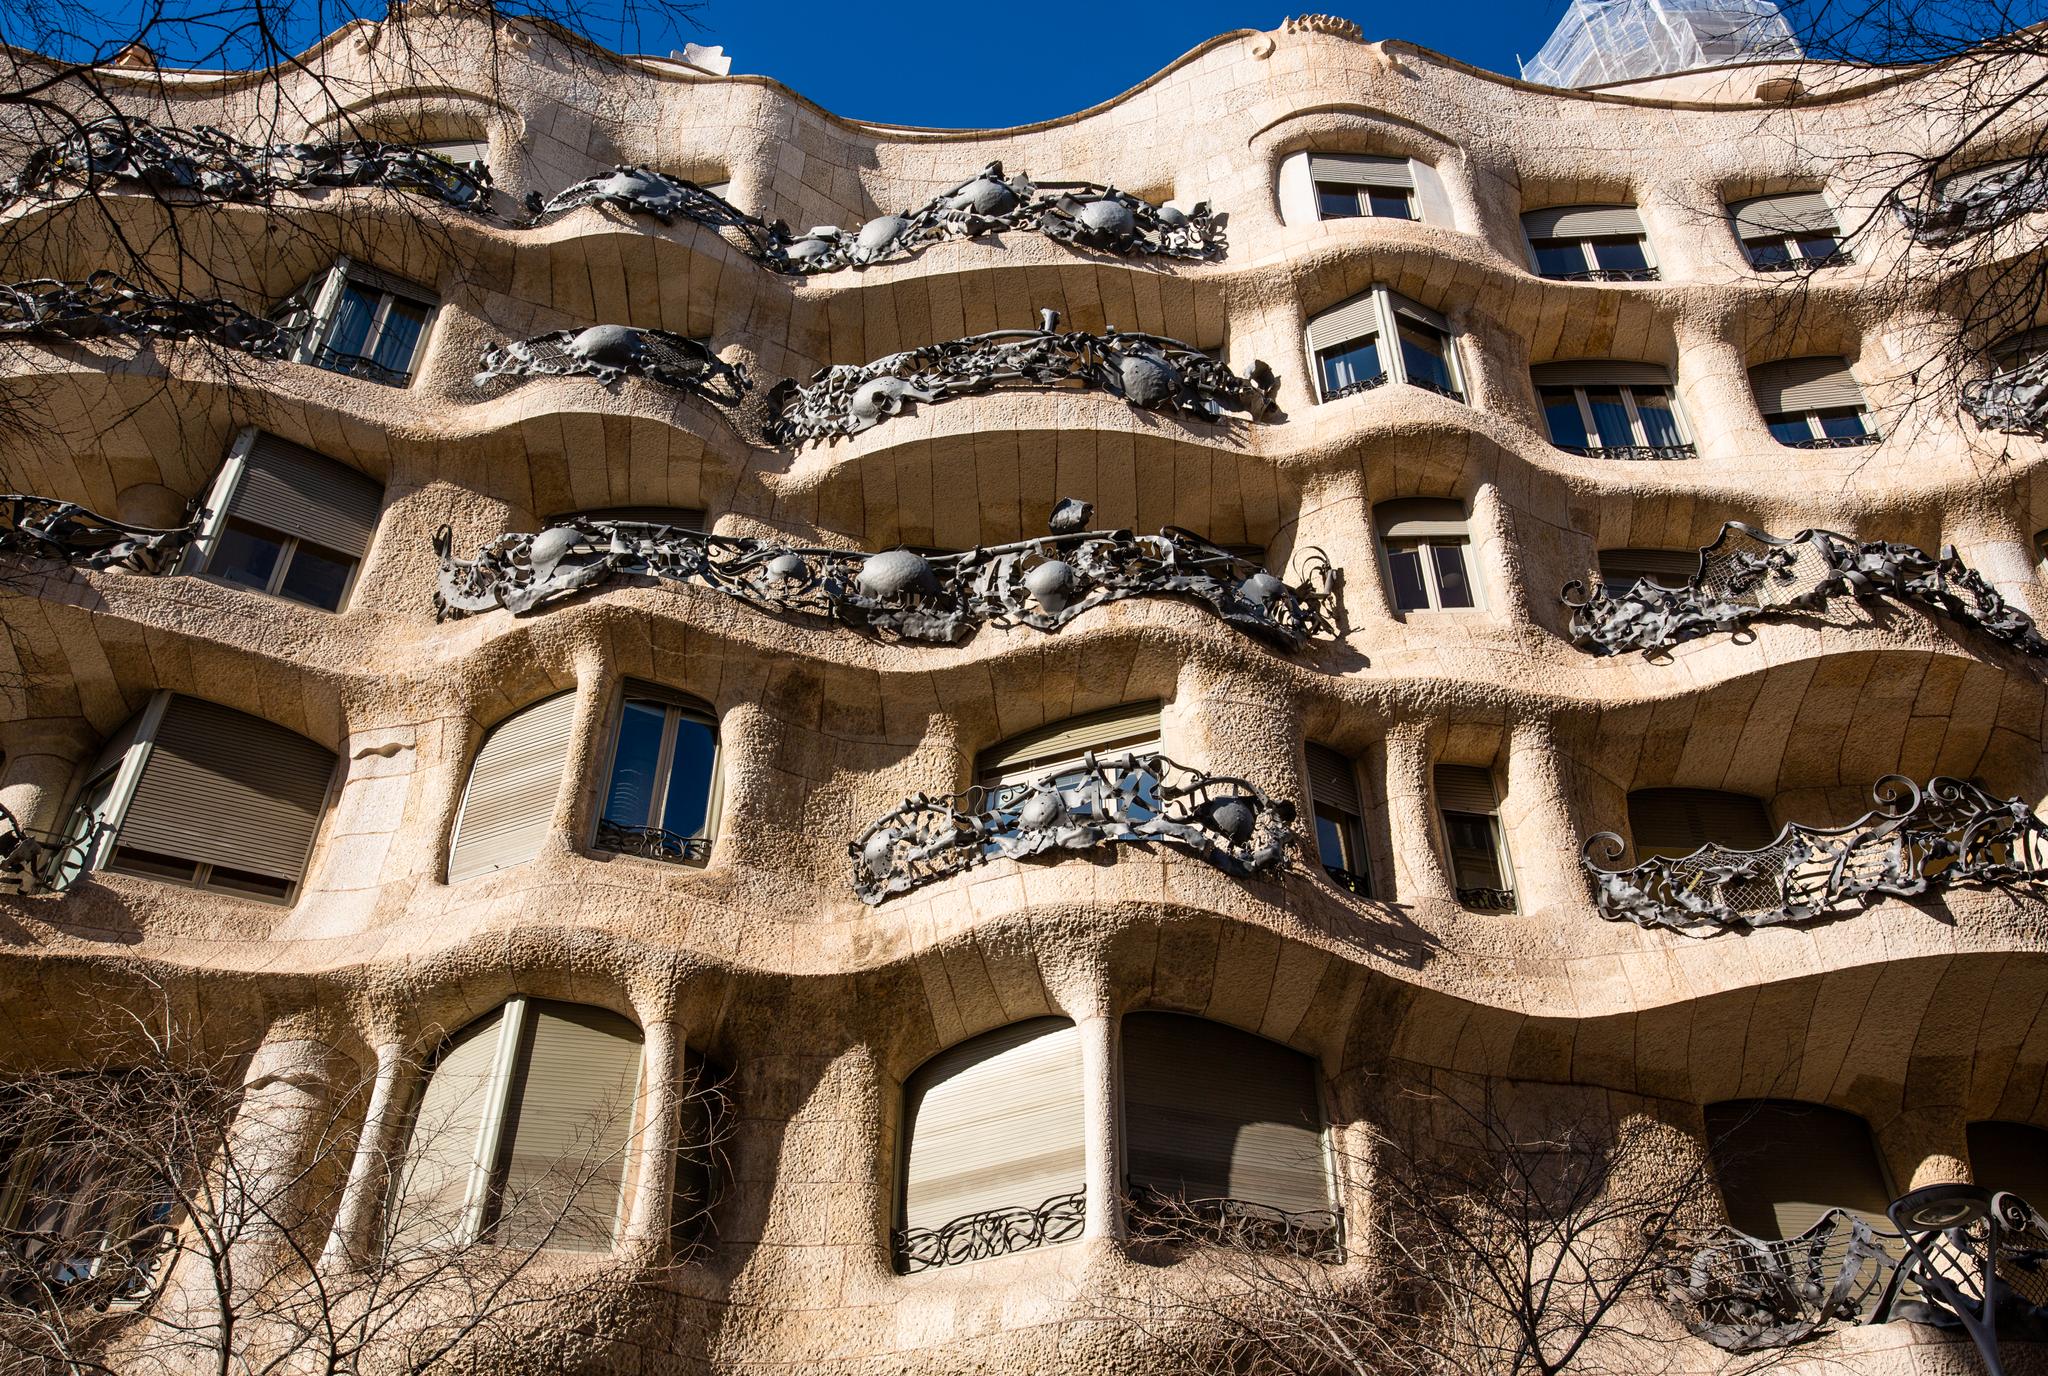 UNESCO-vernede La Pedrera-Casa Milà er bare ett av mange mesterverk i Barcelona signert stjernearkitekten Antoni Gaudí.